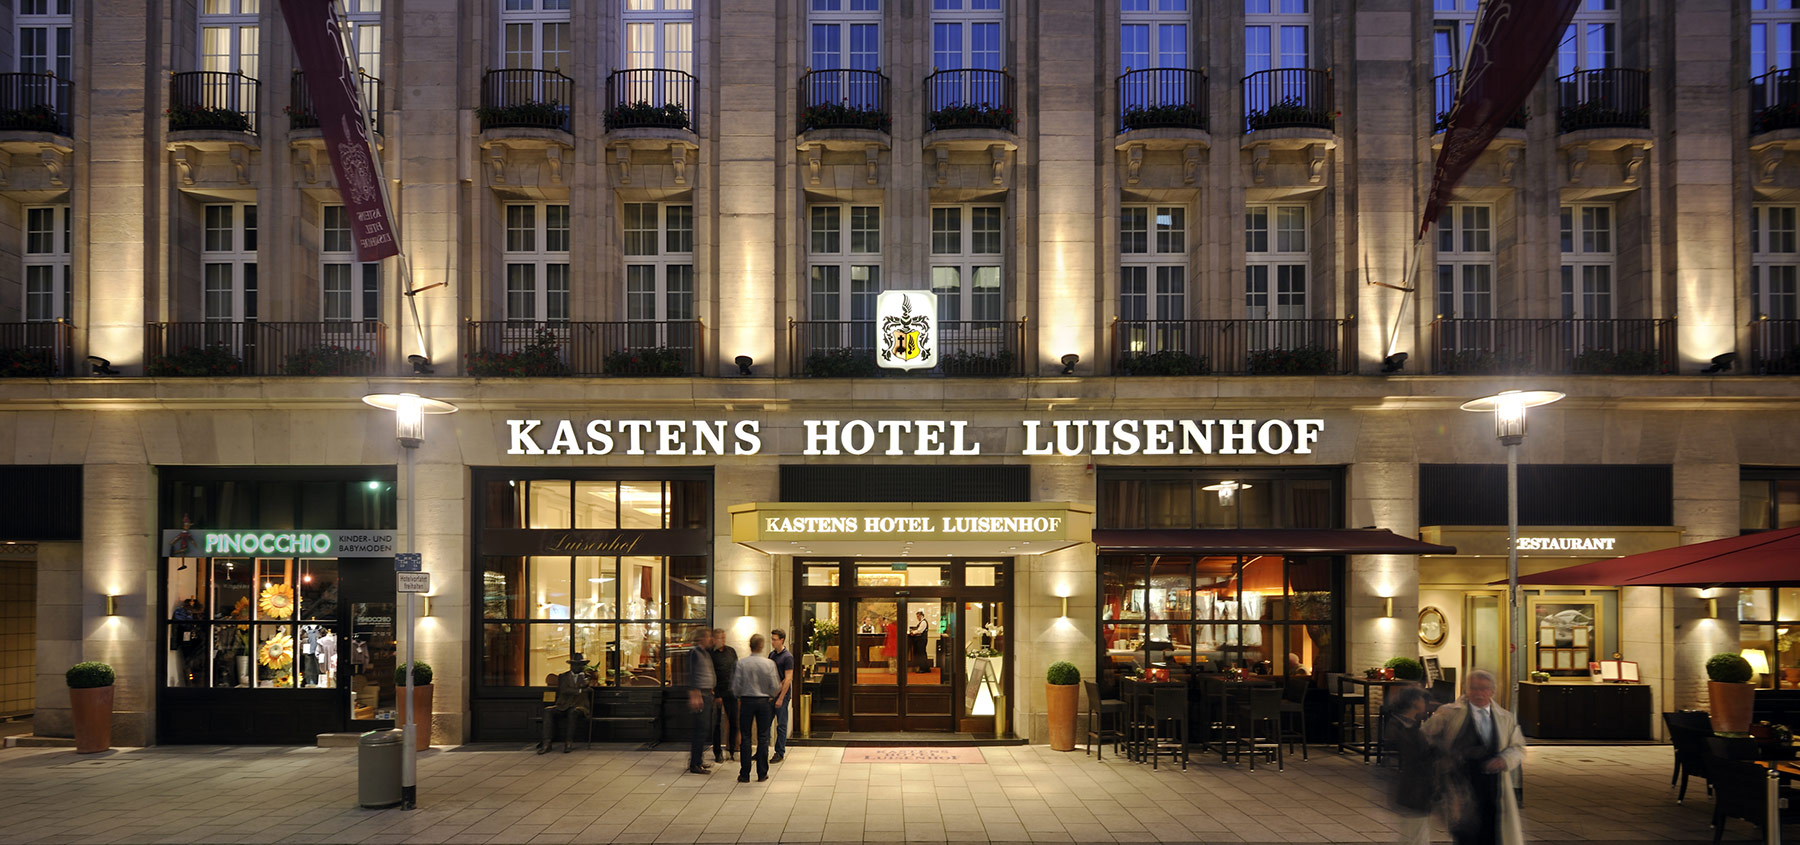 Nachtaufnahme des Kastens Hotel Luisenhof von Fotograf Daniel Möller aus Hannover